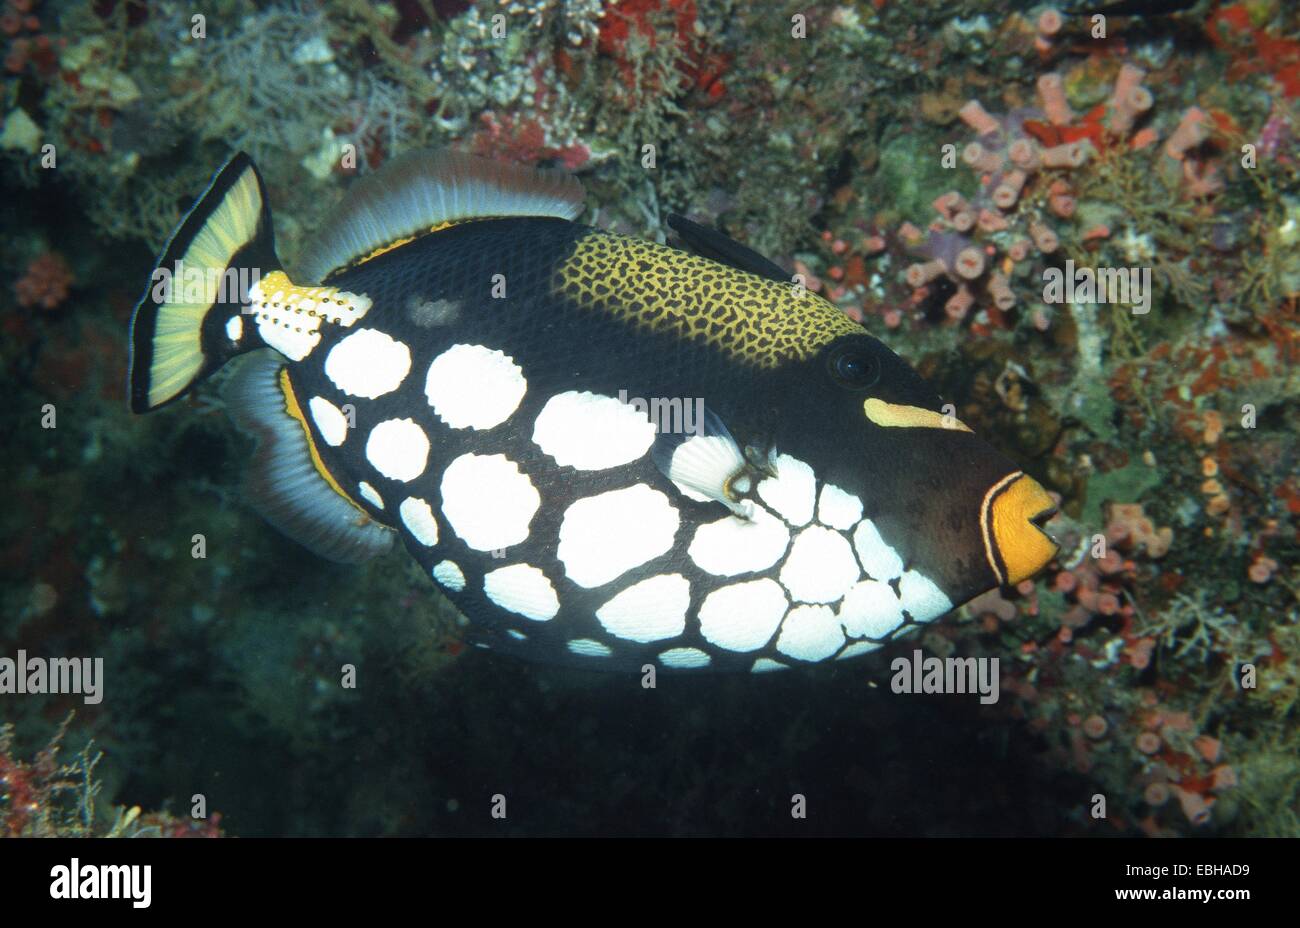 Big-spotted peces ballesta, peces ballesta payaso (Balistoides conspicillum  Fotografía de stock - Alamy